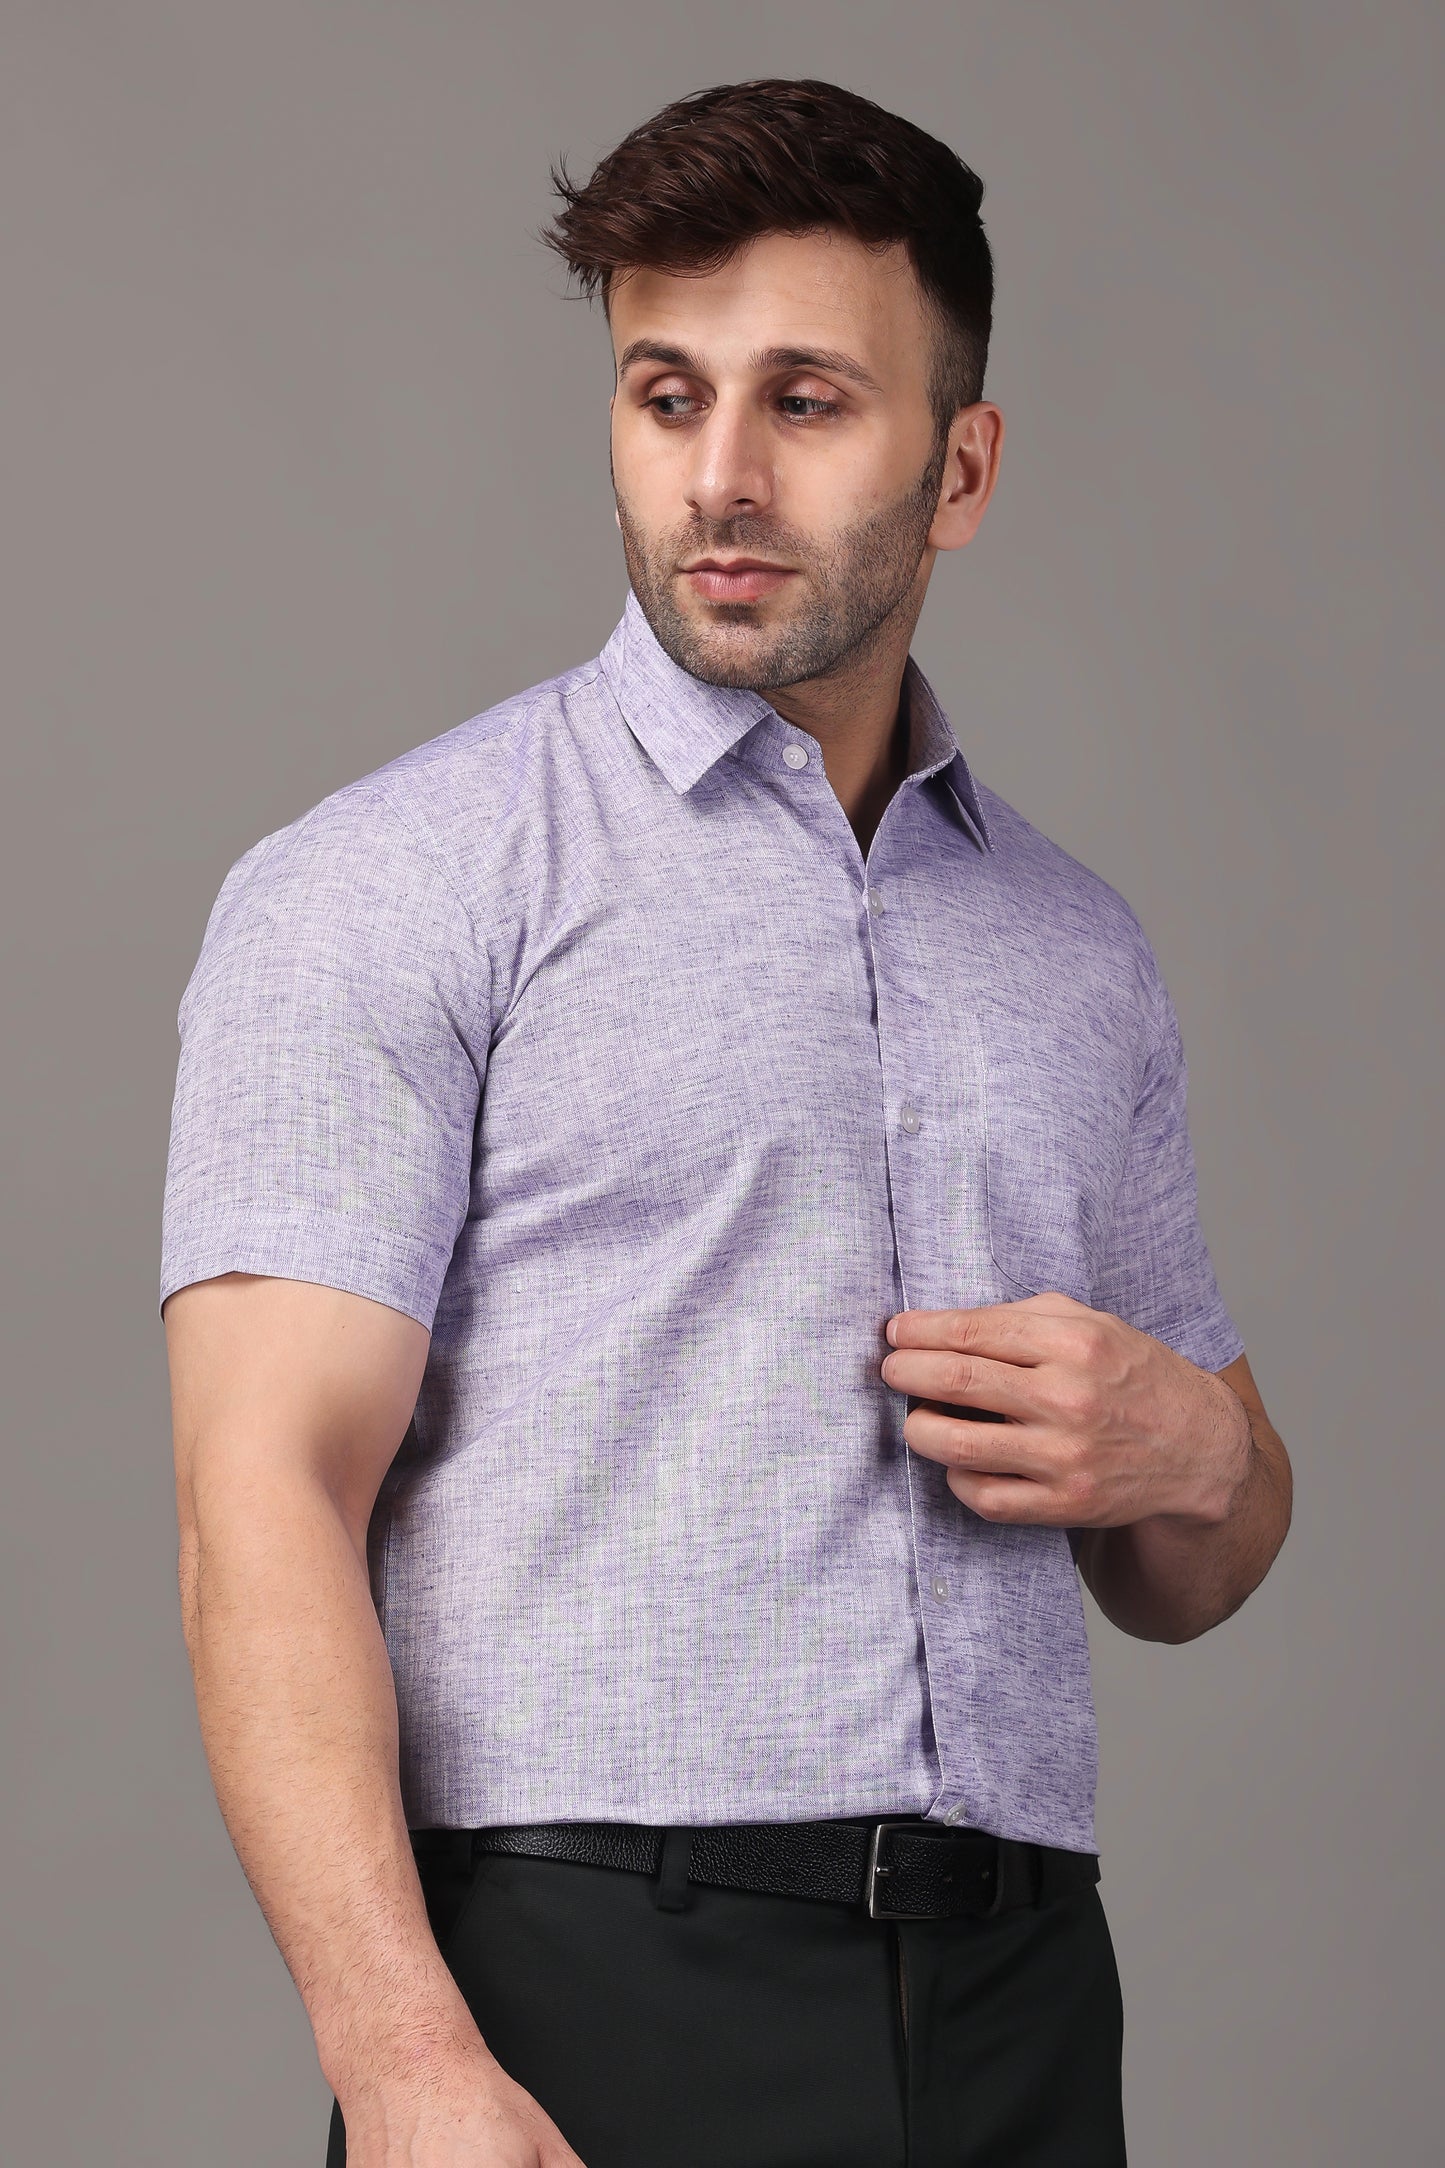 Mauve Plus Size Shirts For Men